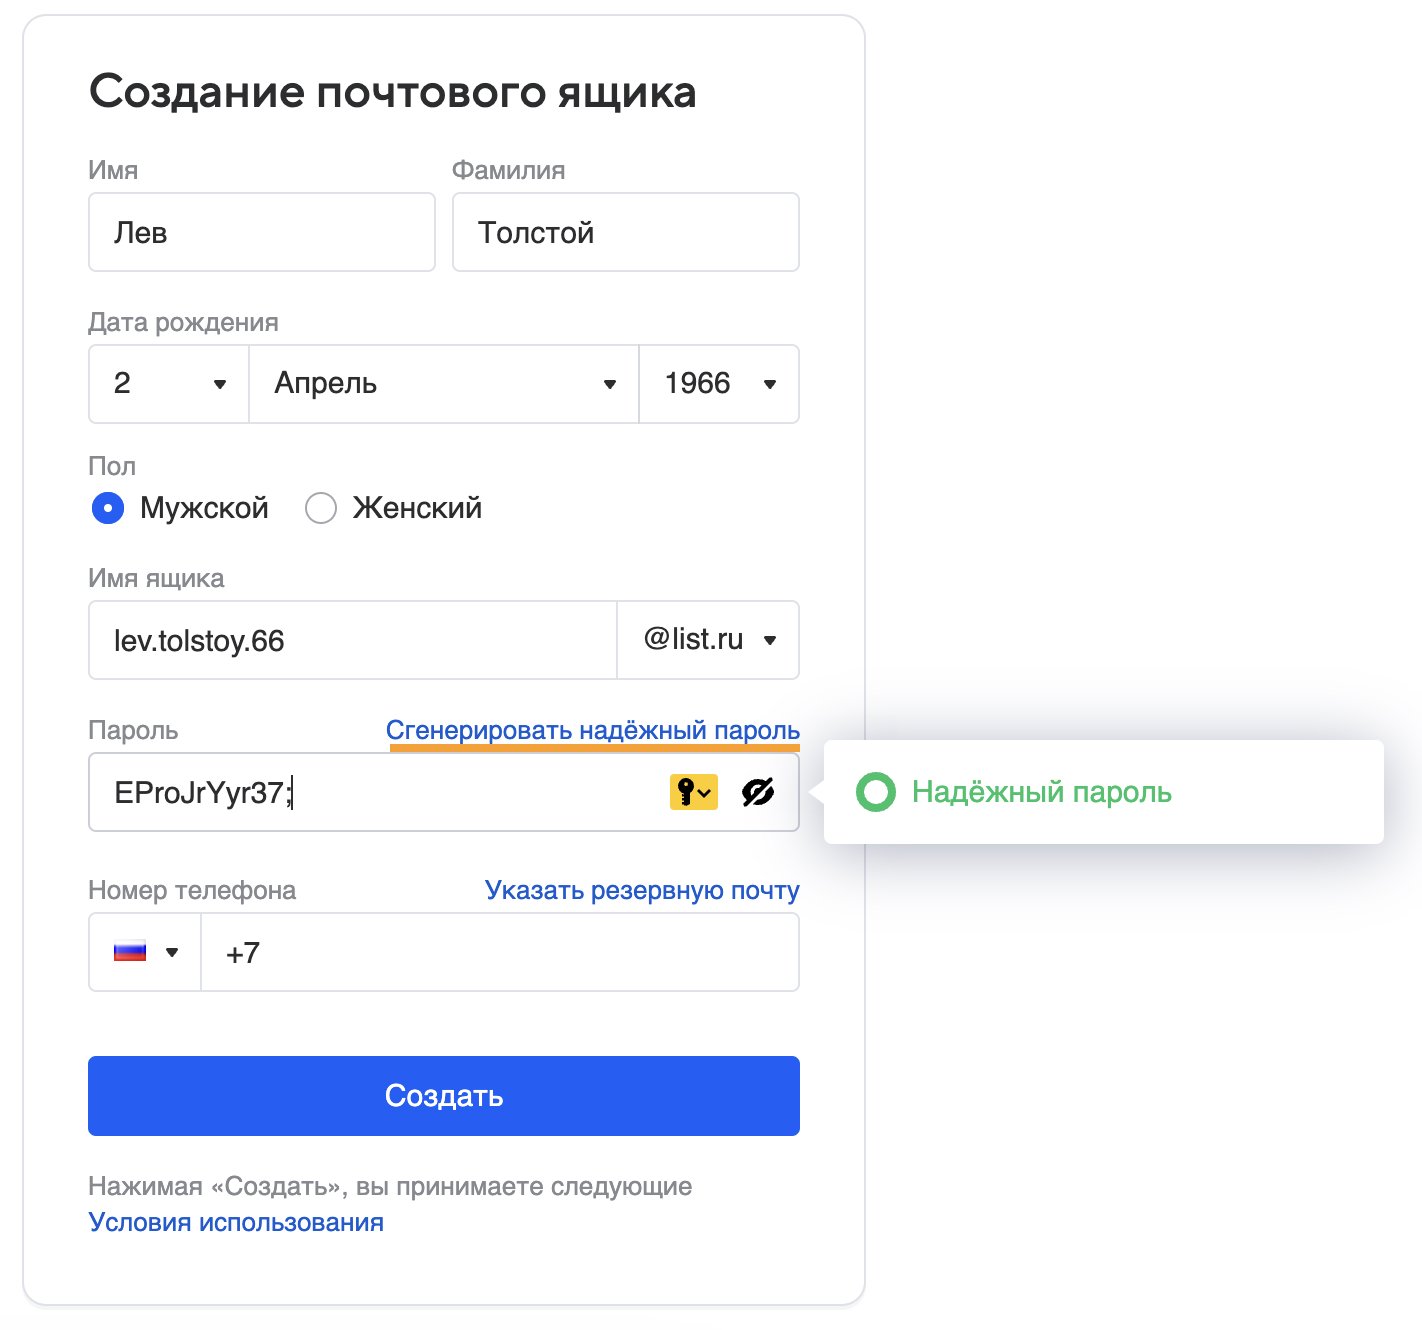 Как удалить сохраненный логин и пароль Вконтакте